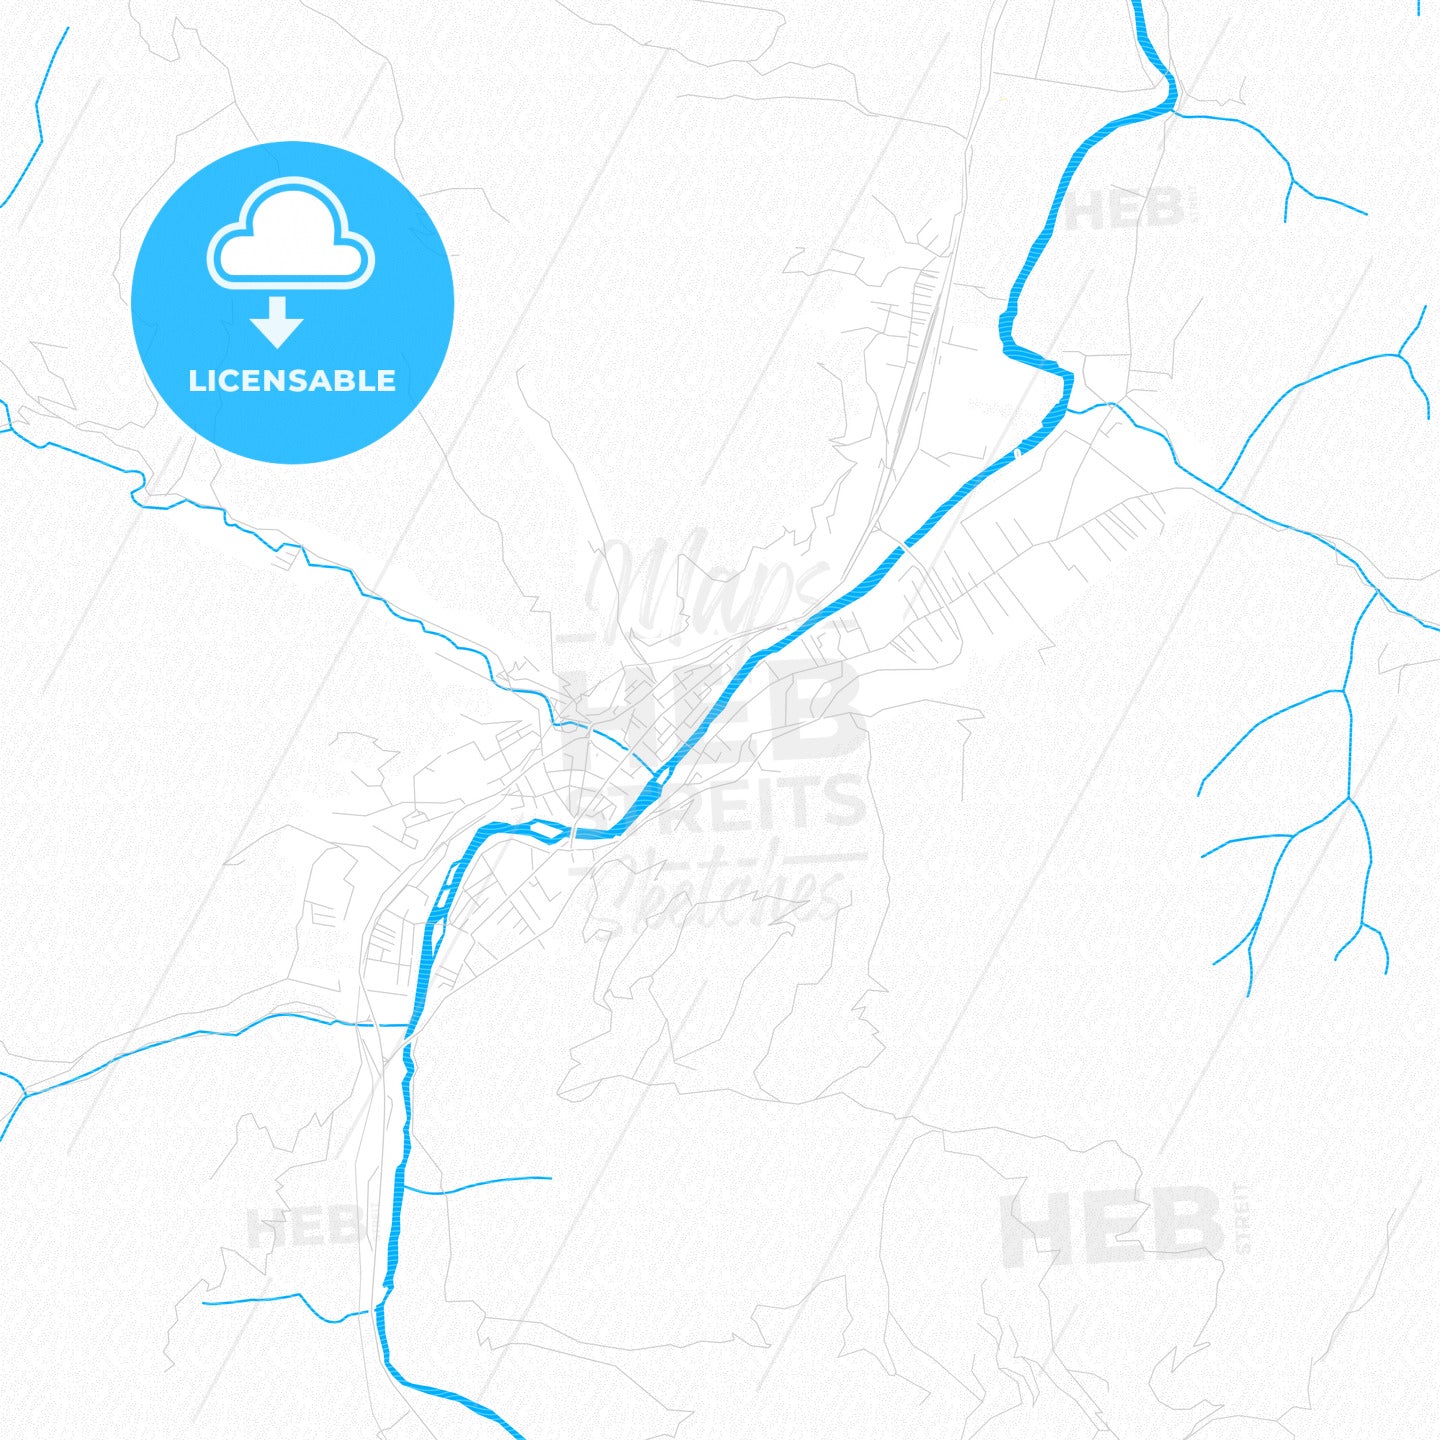 Bijelo Polje, Montenegro PDF vector map with water in focus